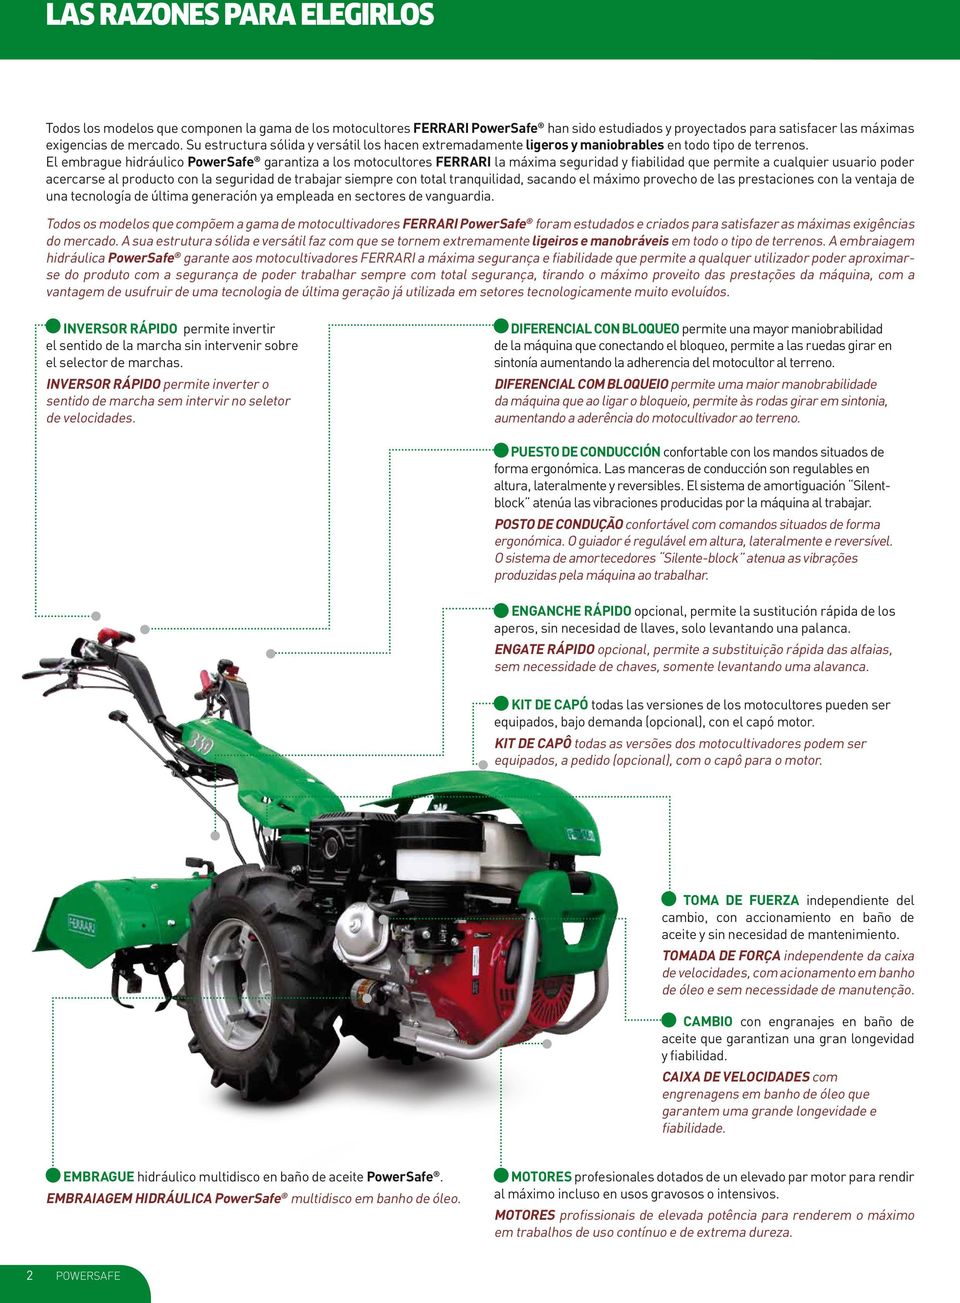 El embrague hidráulico PowerSafe garantiza a los motocultores FERRARI la máxima seguridad y fiabilidad que permite a cualquier usuario poder acercarse al producto con la seguridad de trabajar siempre